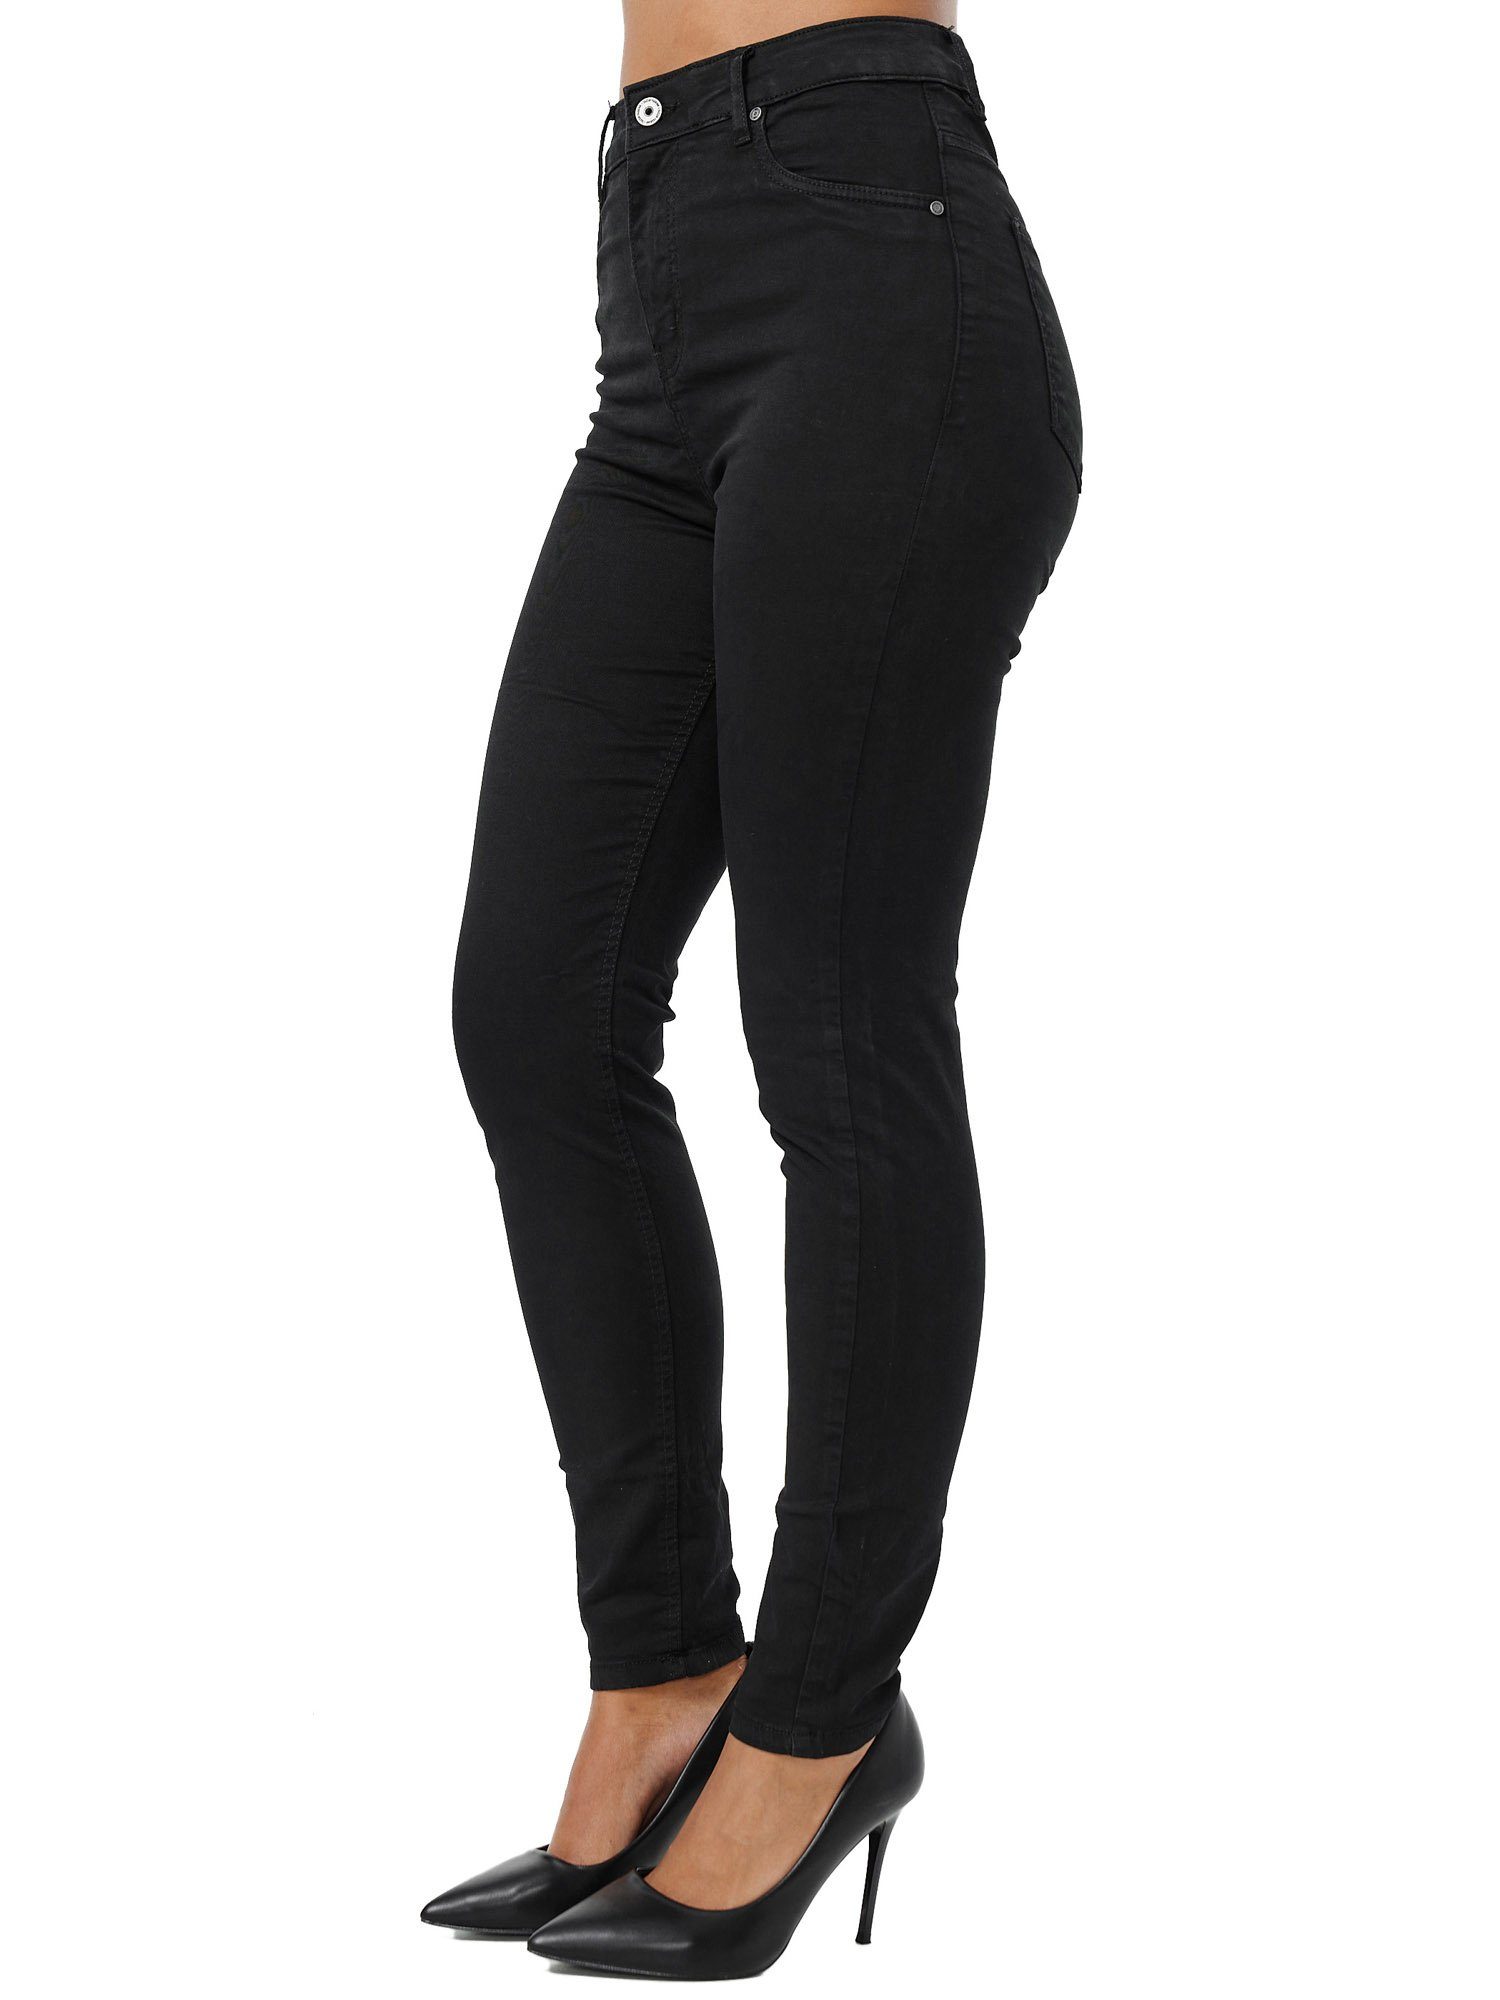 Tazzio Skinny-fit-Jeans F103 Rise Damen schwarz Jeanshose High